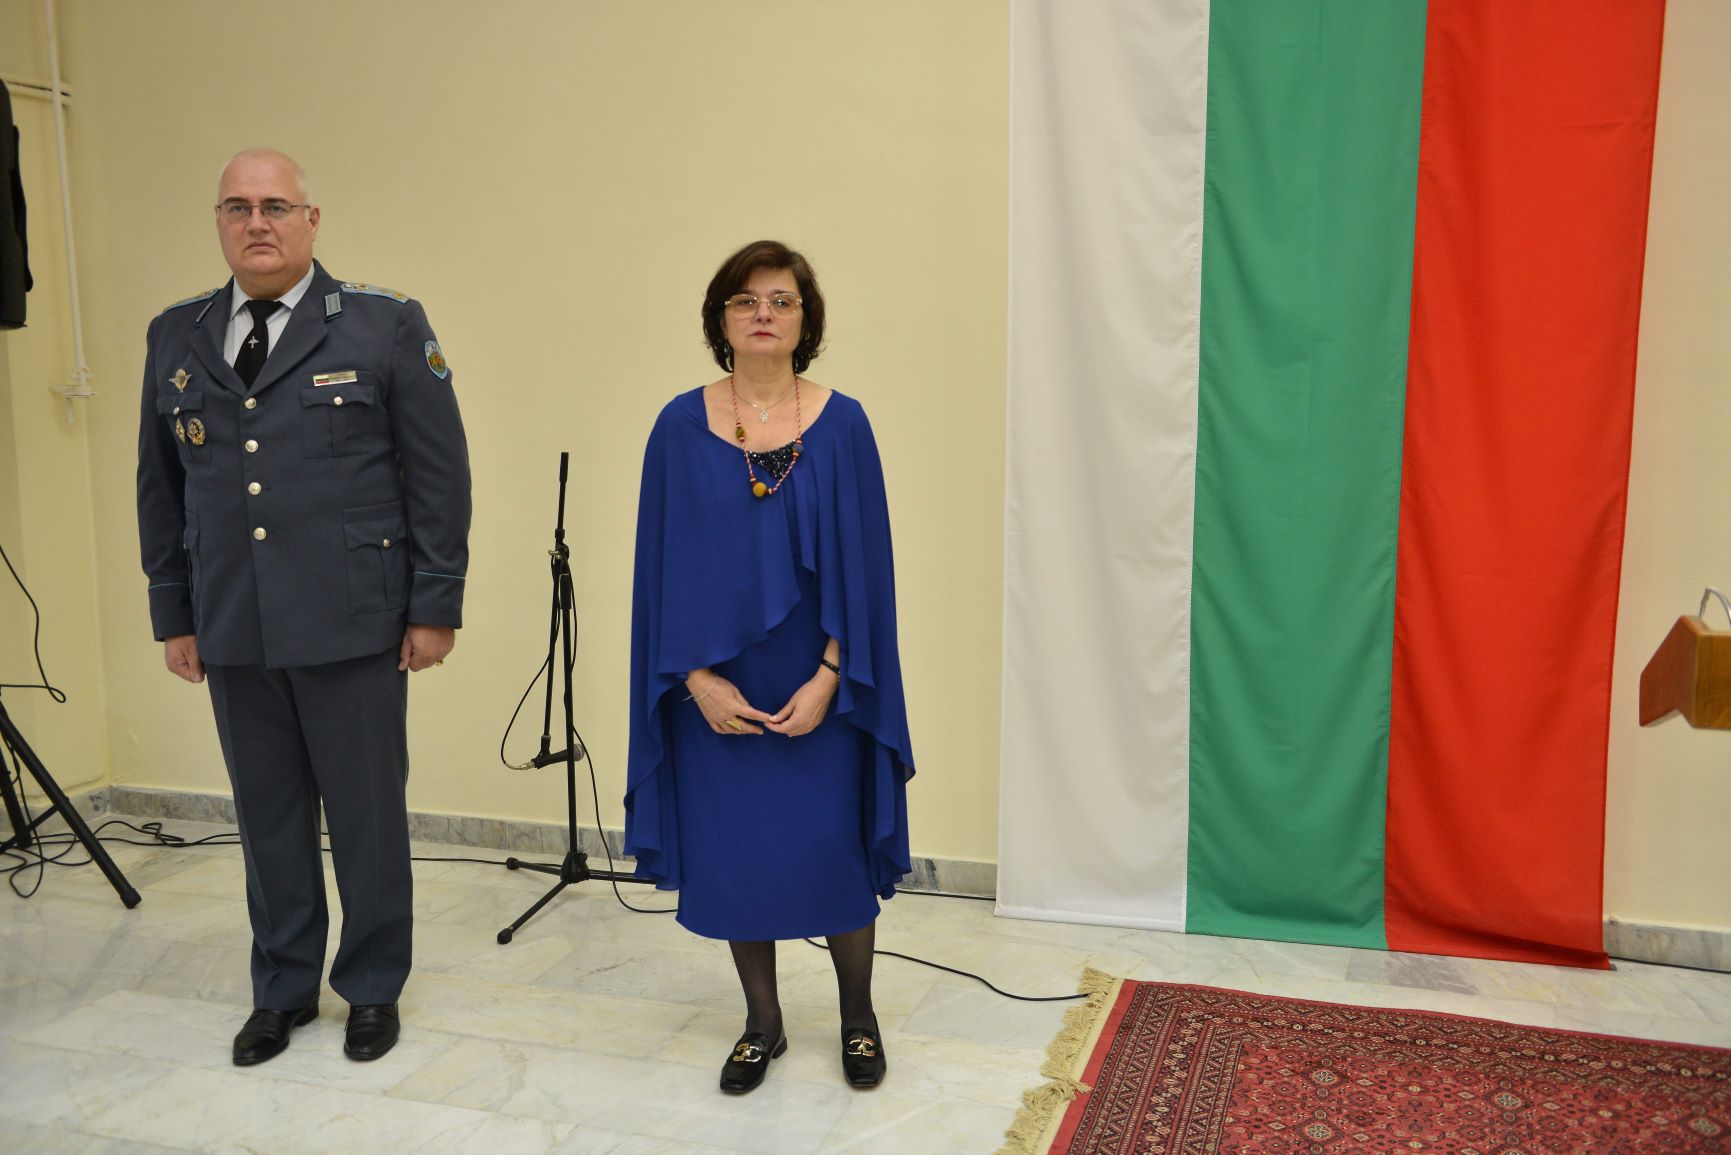 Прием по повод Националния празник на Република България